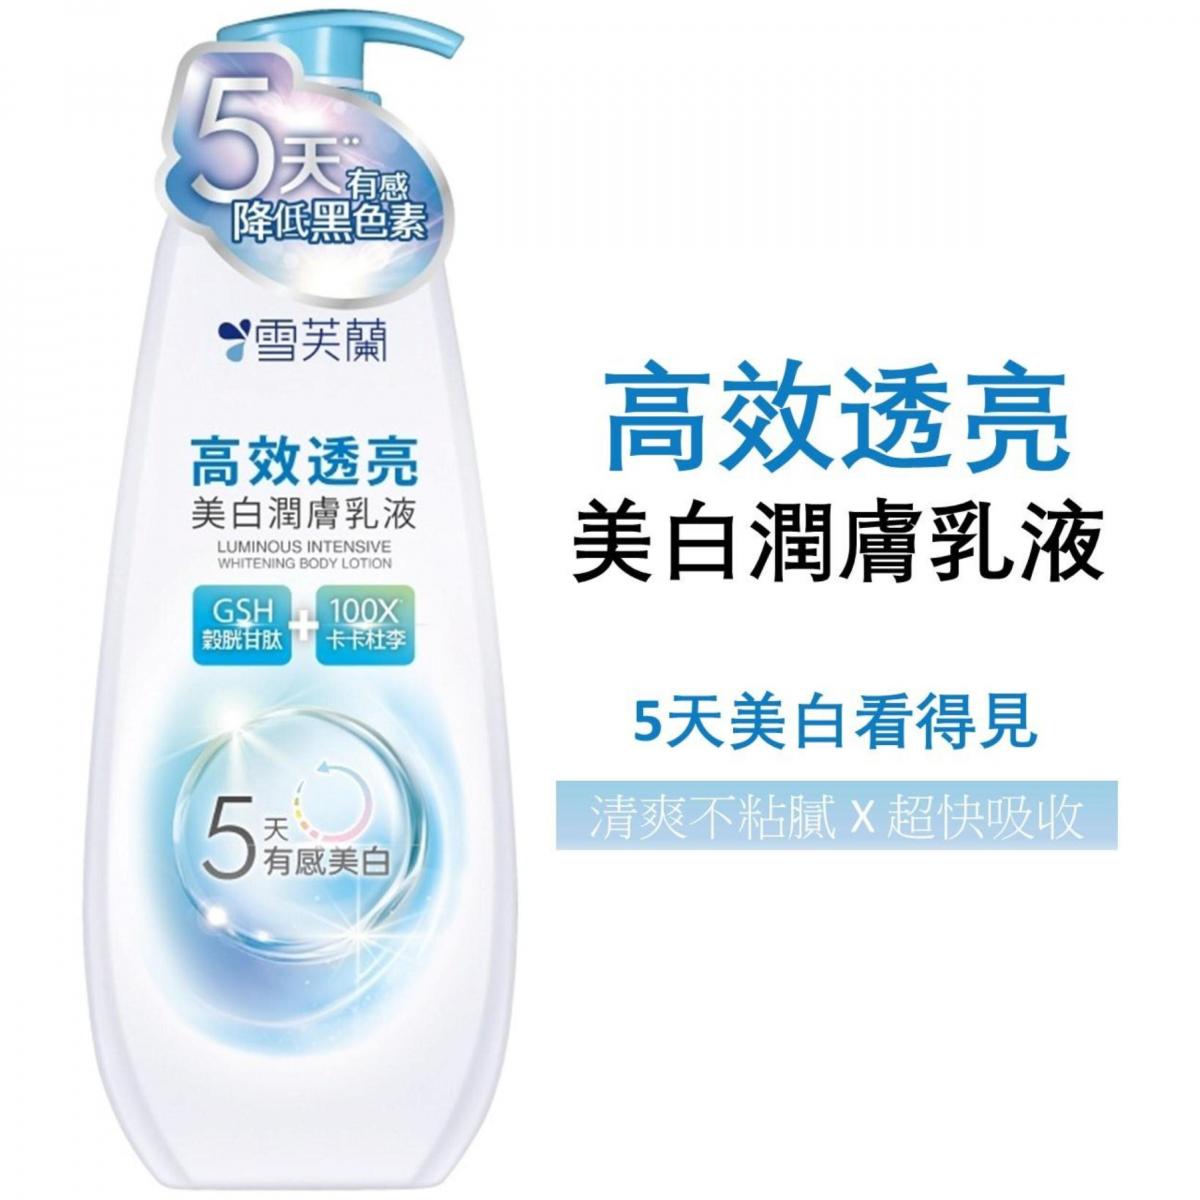 雪芙蘭| 高效透亮美白潤膚乳液350g - 20318 | HKTVmall 香港最大網購平台